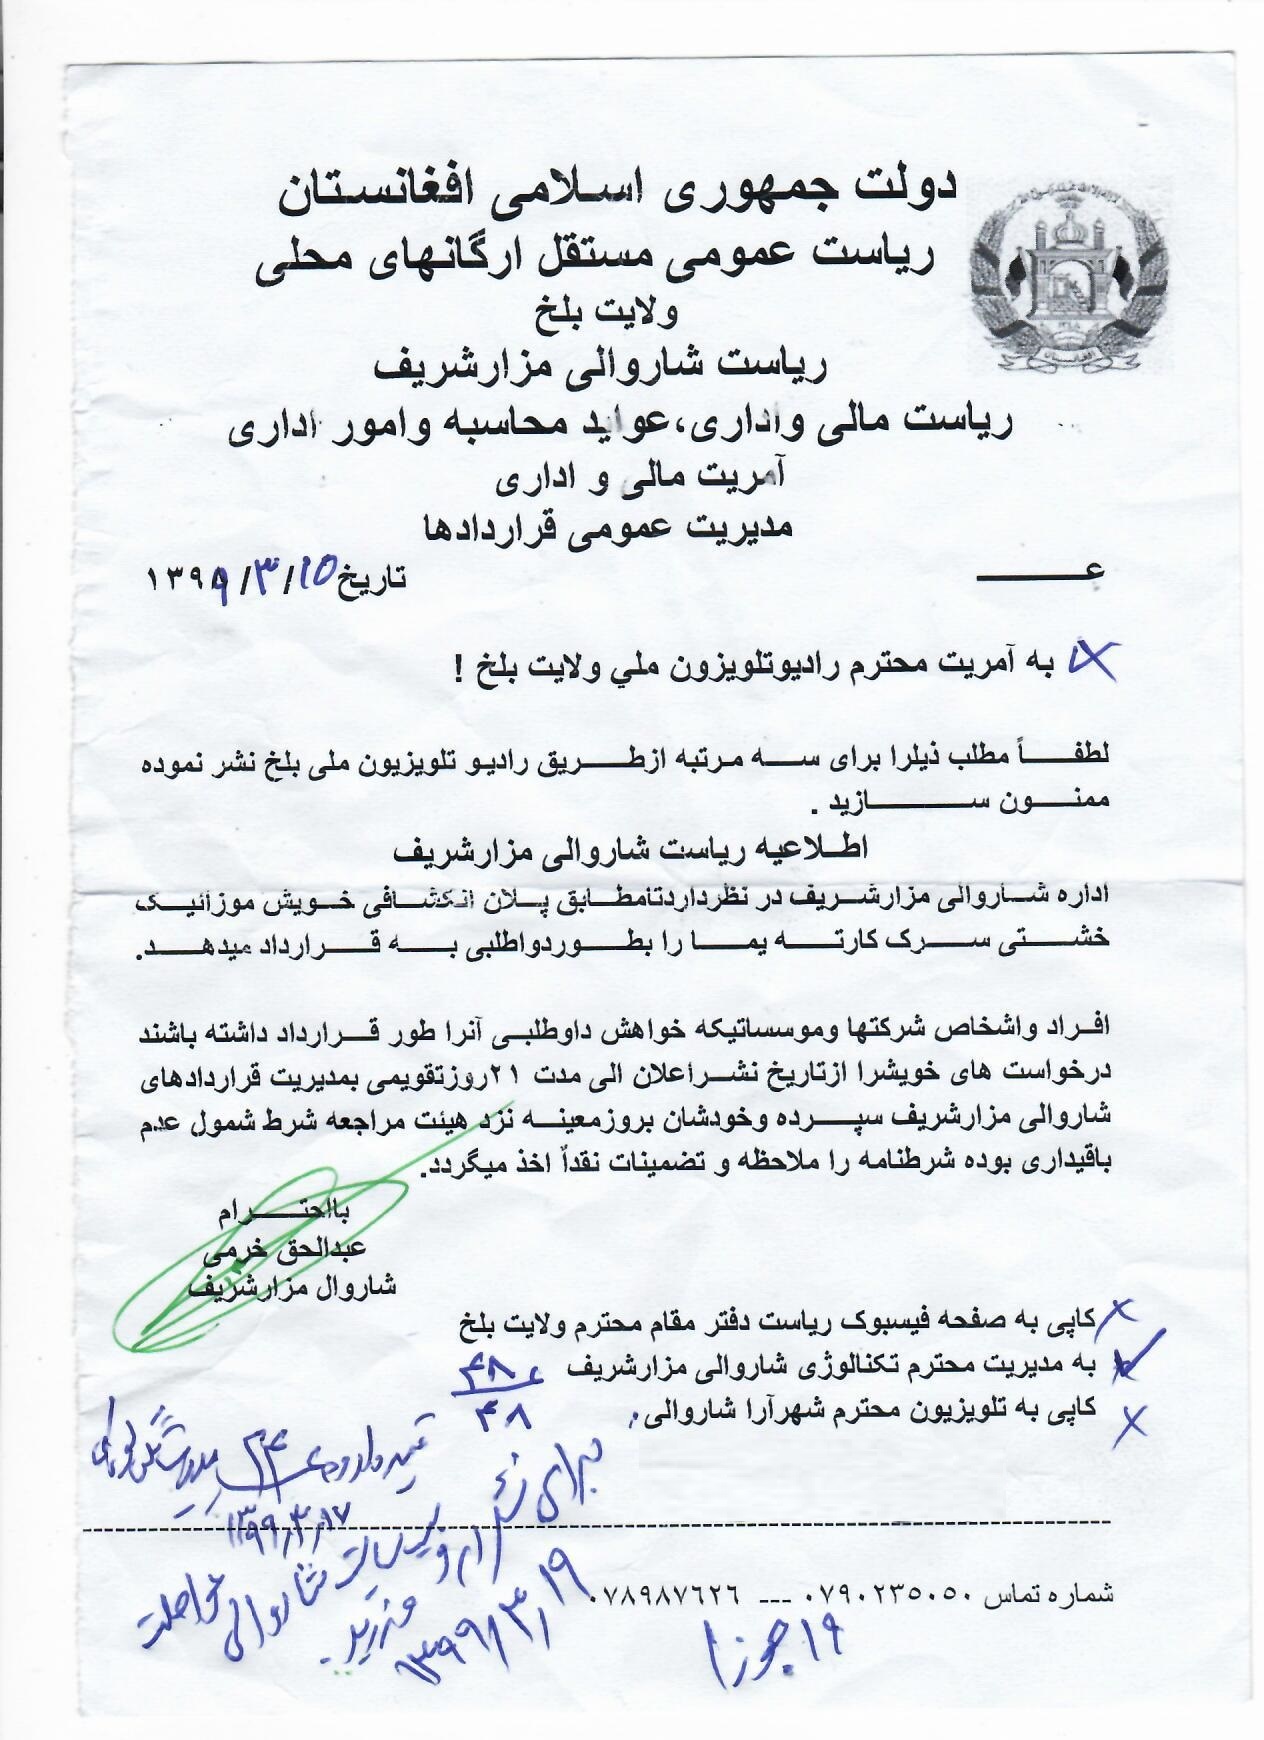 نشر اعلان داوطلبی ساخت و ساز موزاییک خشتی سرک کارته یما شاروالی مزارشریف